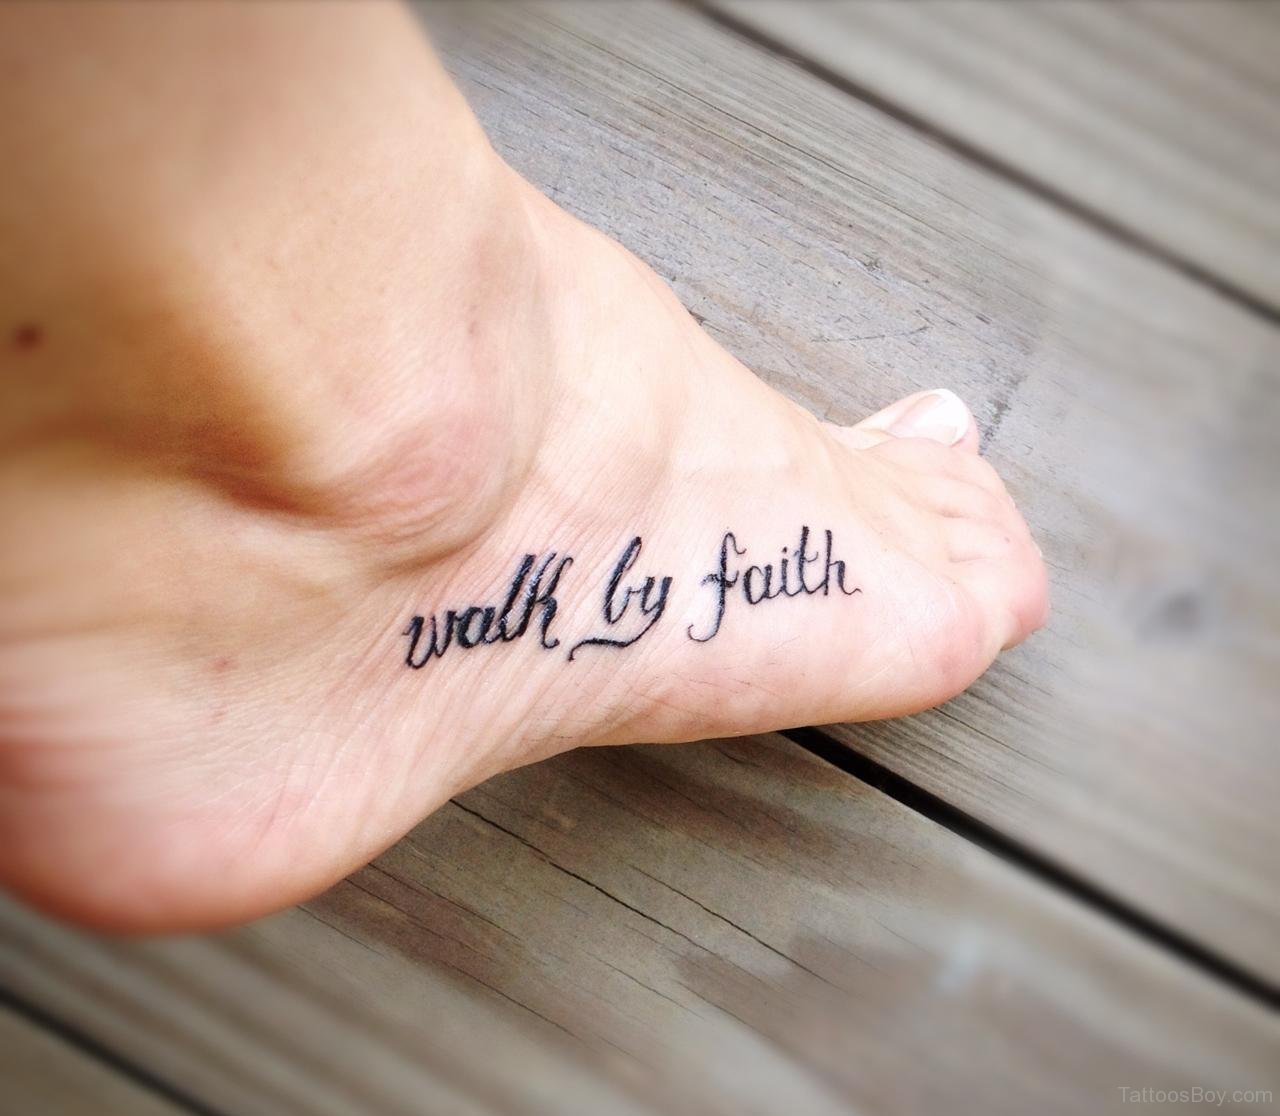 Walk By Faith.